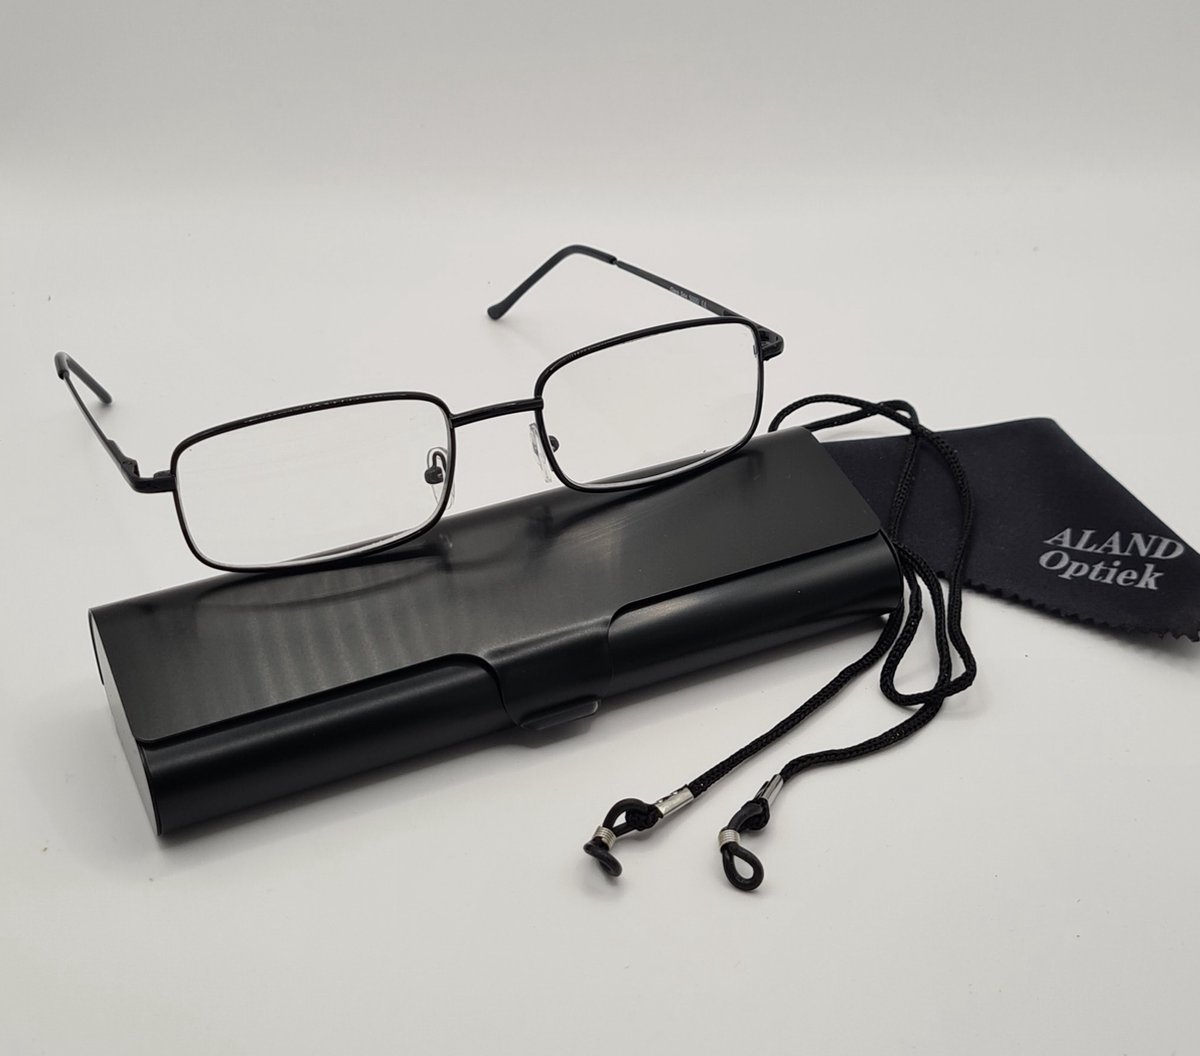 Unisex leesbril +3,0 met brillenkoker + koord + microvezeldoekje / class one 5000 / zwart / +3.0 lunettes de lecture avec étui pratique, cordon et chiffon de nettoyage pour lentilles / Aland optiek